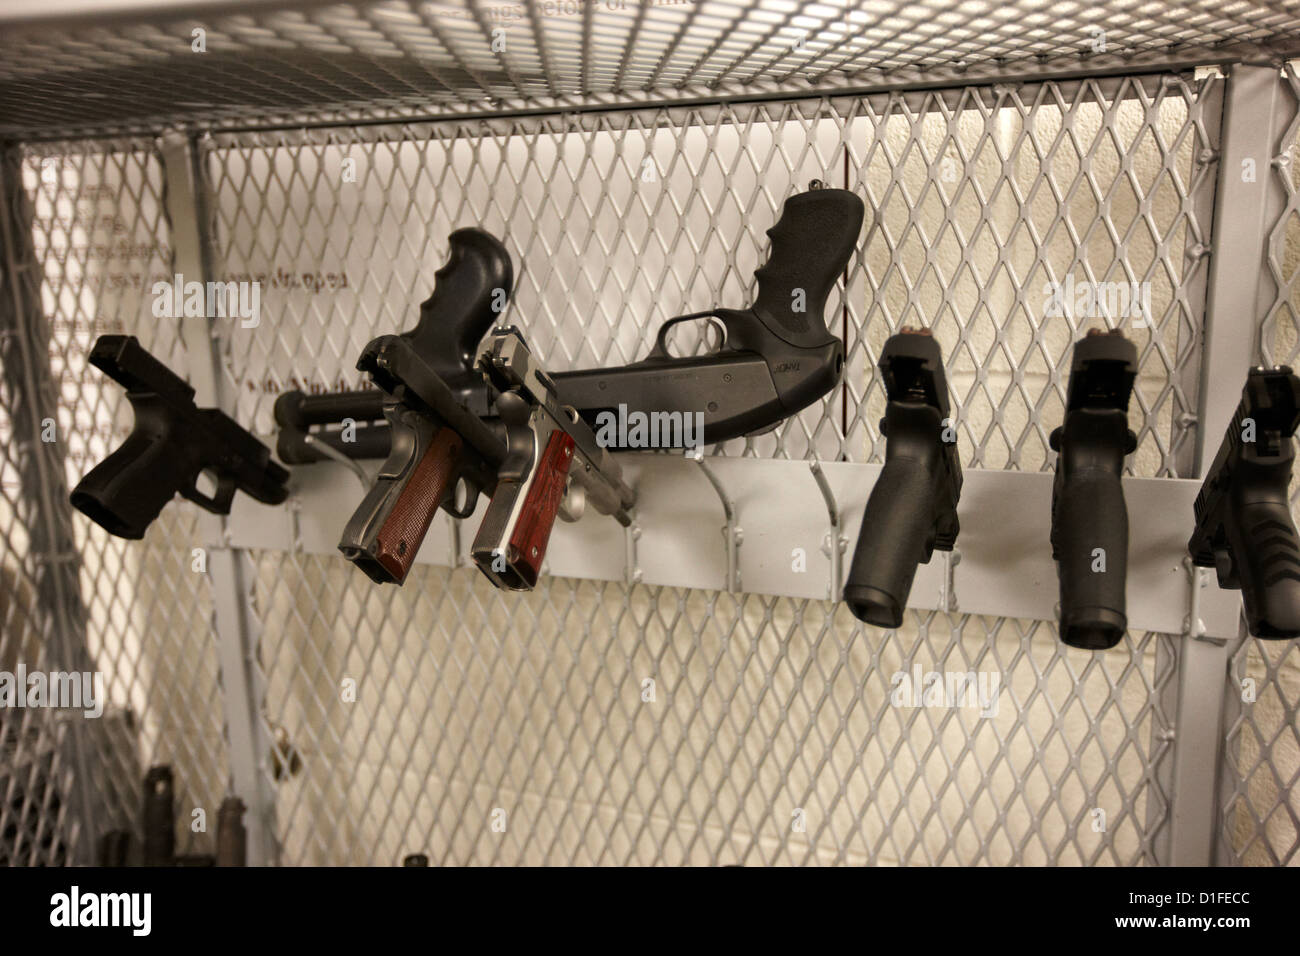 caged range of handguns at a gun range in las vegas nevada usa Stock Photo